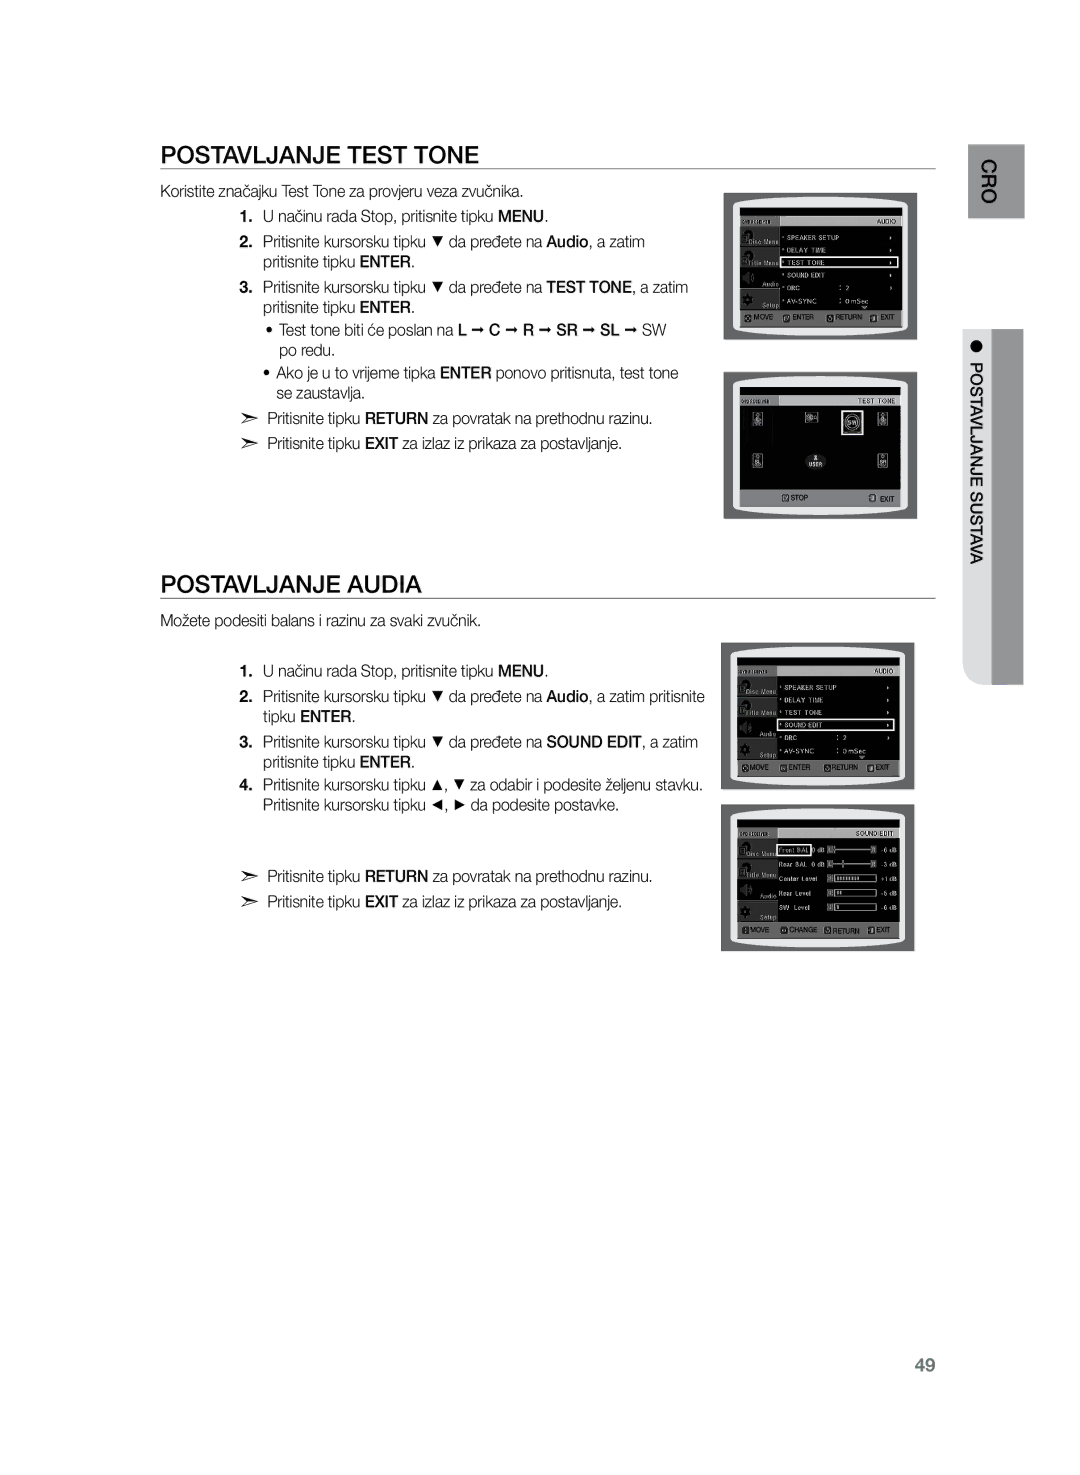 Samsung HT-Z220R/XEE, HT-TZ222R/EDC, HT-Z220R/EDC, HT-TZ225R/EDC, HT-TZ222R/XEE Postavljanje Test Tone, Postavljanje audia 